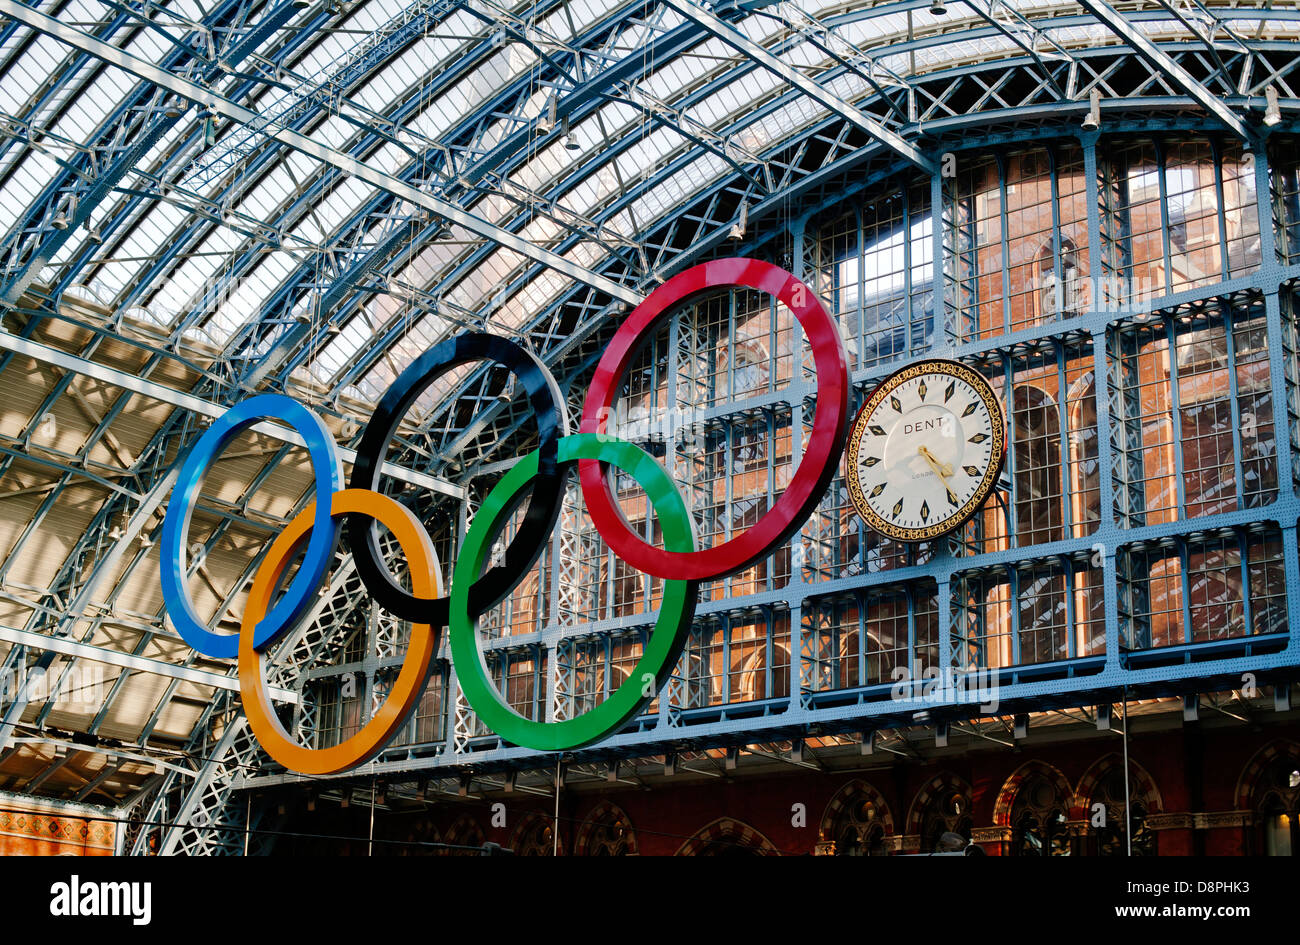 Anneaux Olympiques et de l'horloge, St Pancras, Londres, Angleterre ; Royaume-Uni ; Europe Banque D'Images